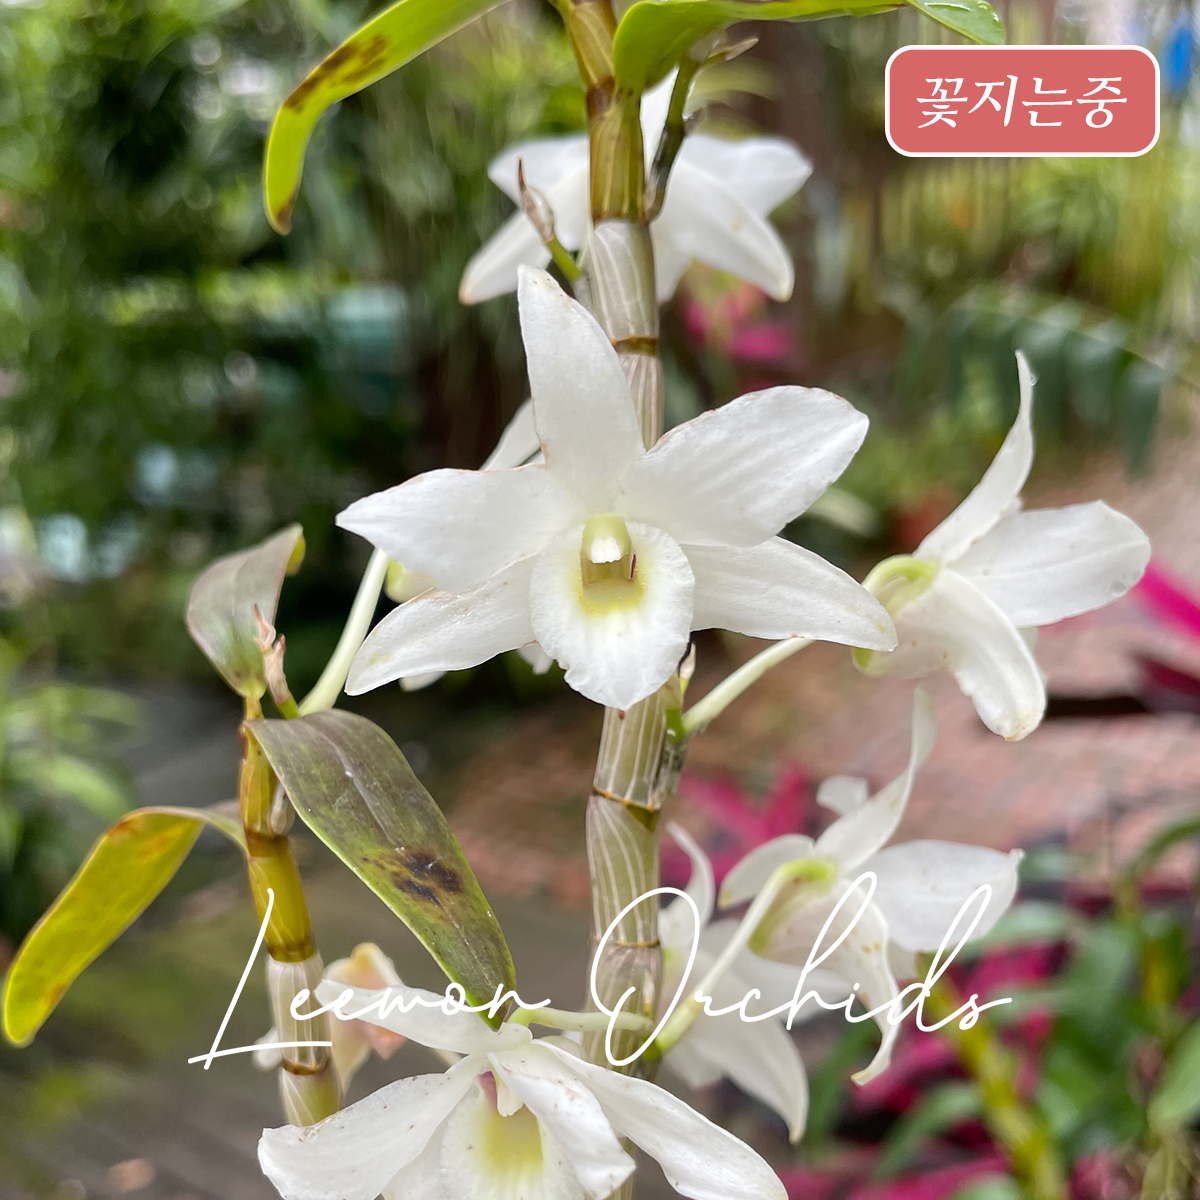 [꽃지는중] 덴드로비움 일월성(日月星) 화이트 Dendrobium (officinale x moniliforme) white